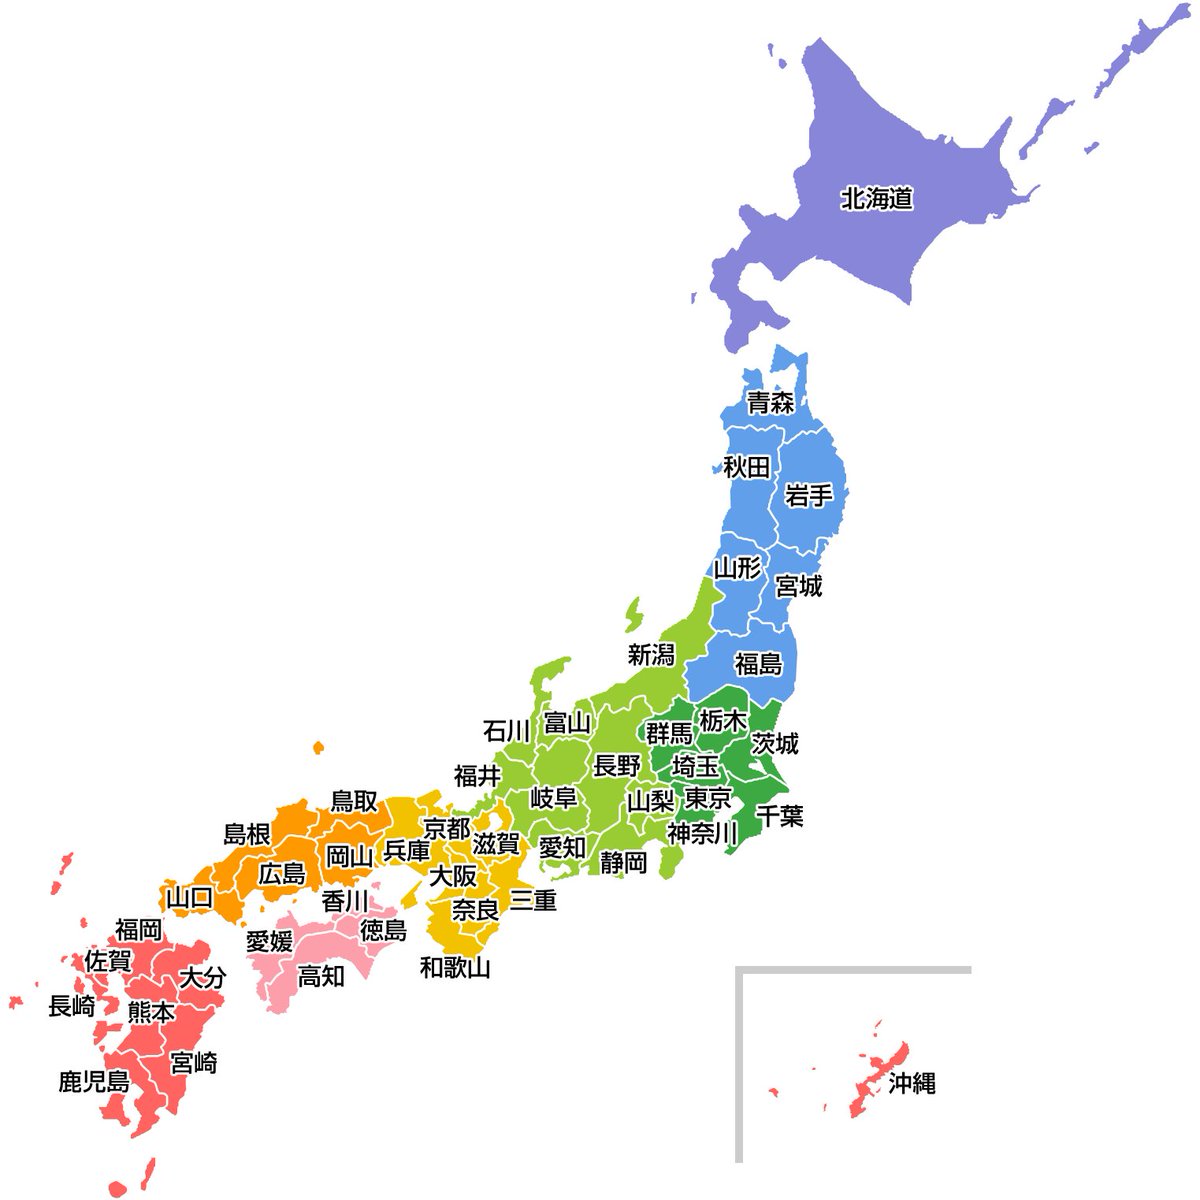 「県名の記載がある日本地図を供で読むと一層愉しめます(╹◡╹) 」|やる気のない夕海２世のイラスト